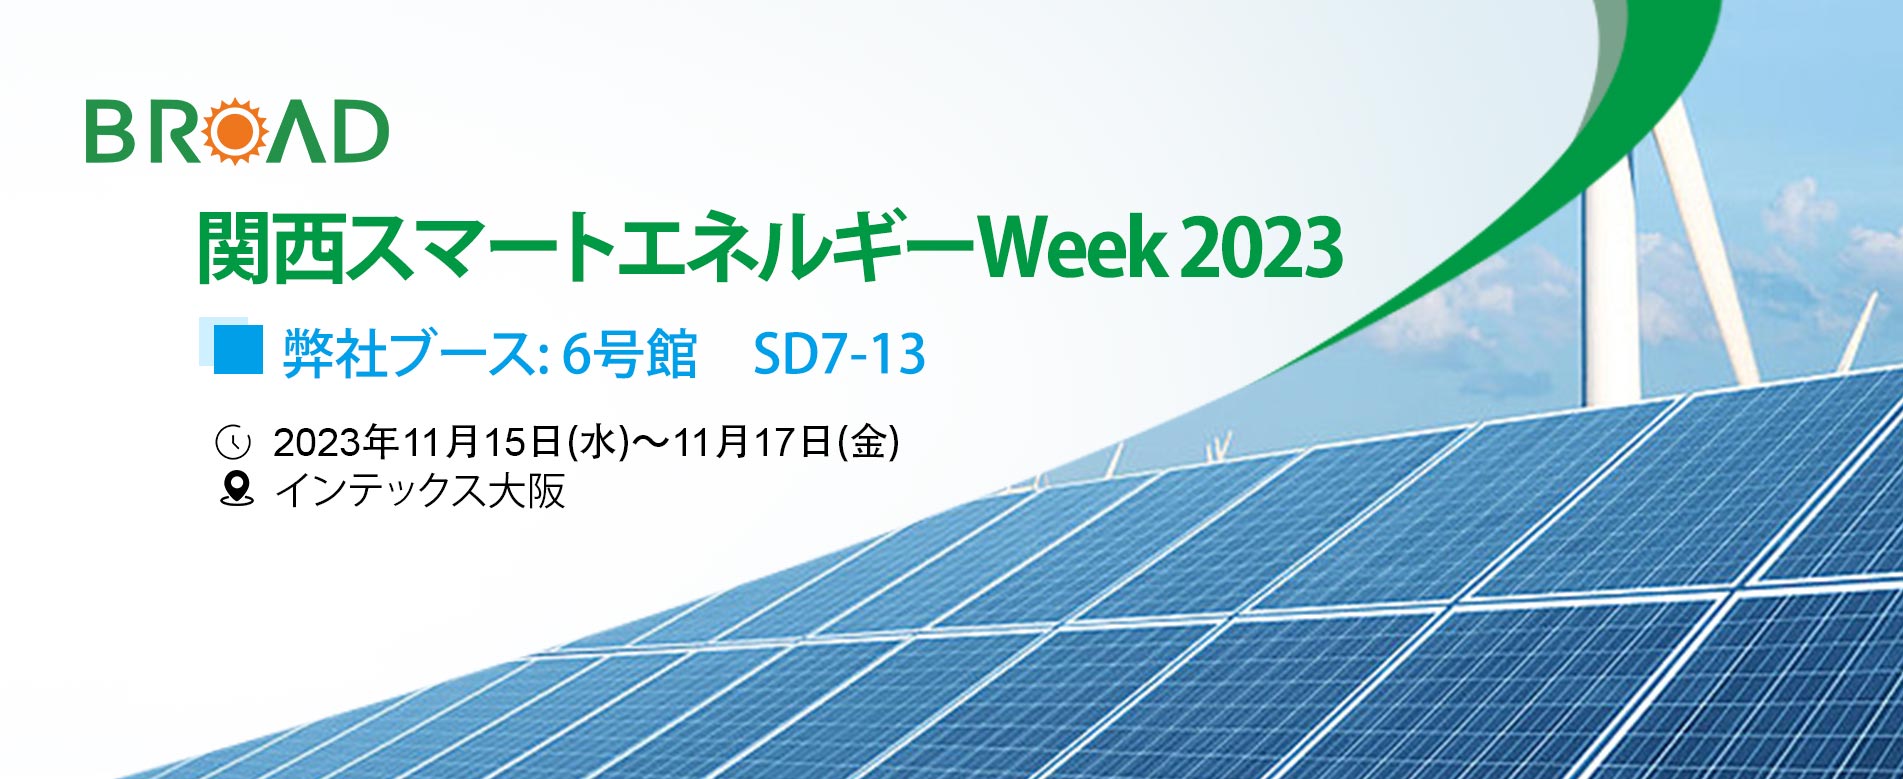 関西スマートエネルギーWeek 2023